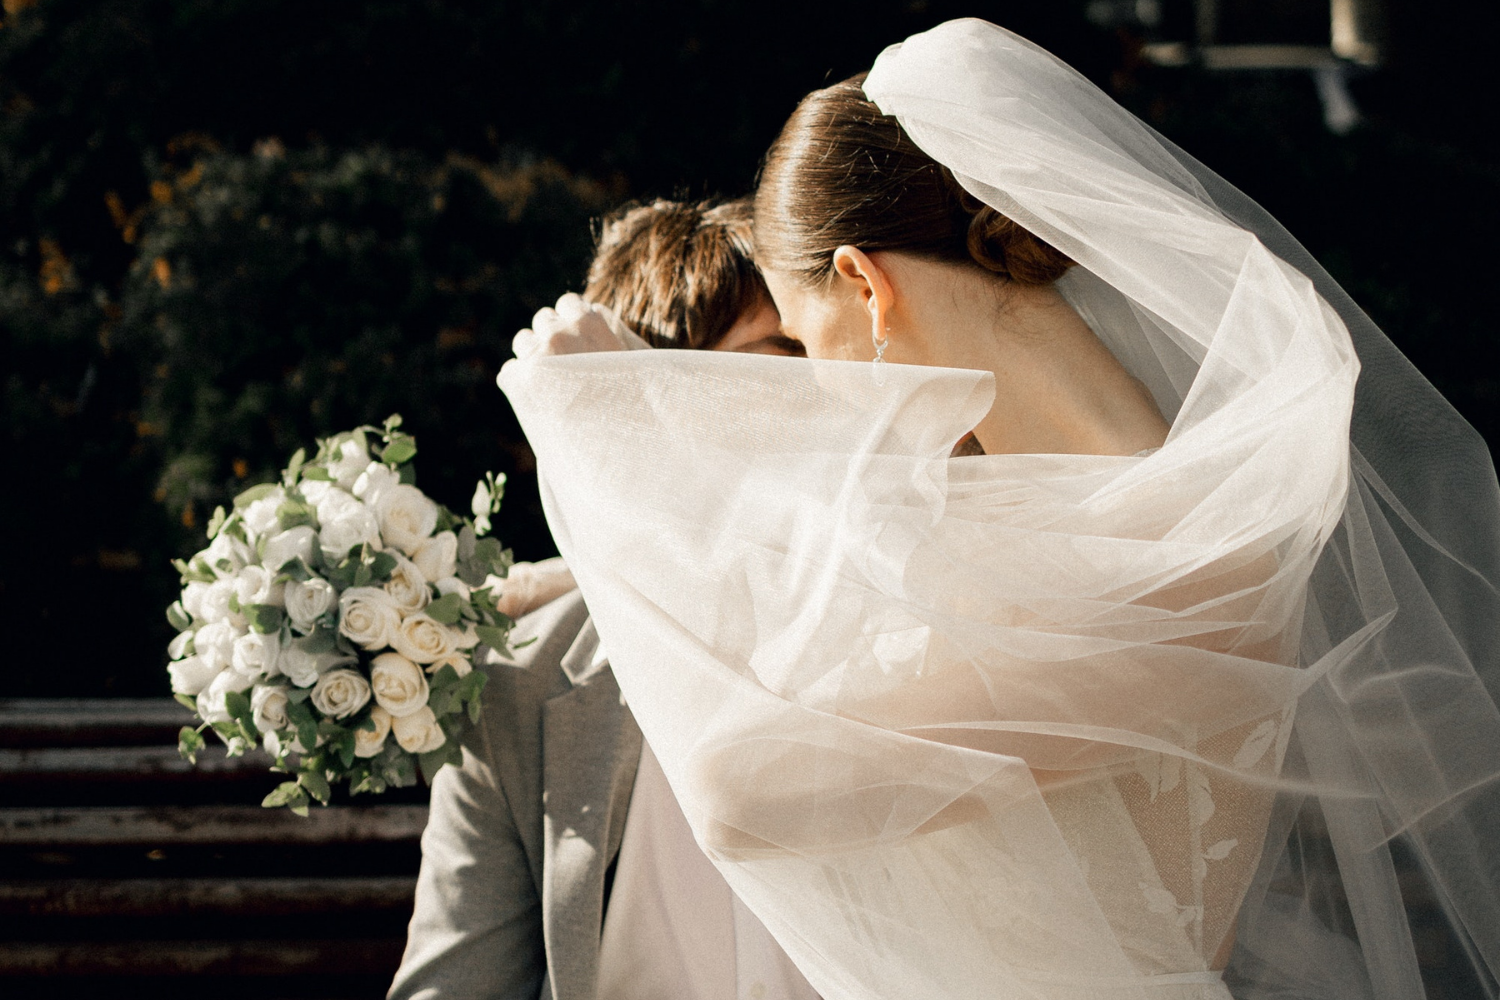 Un couple de jeunes mariés s'enlaçant, le voile de la mariée en premier plan cachant leurs visages.